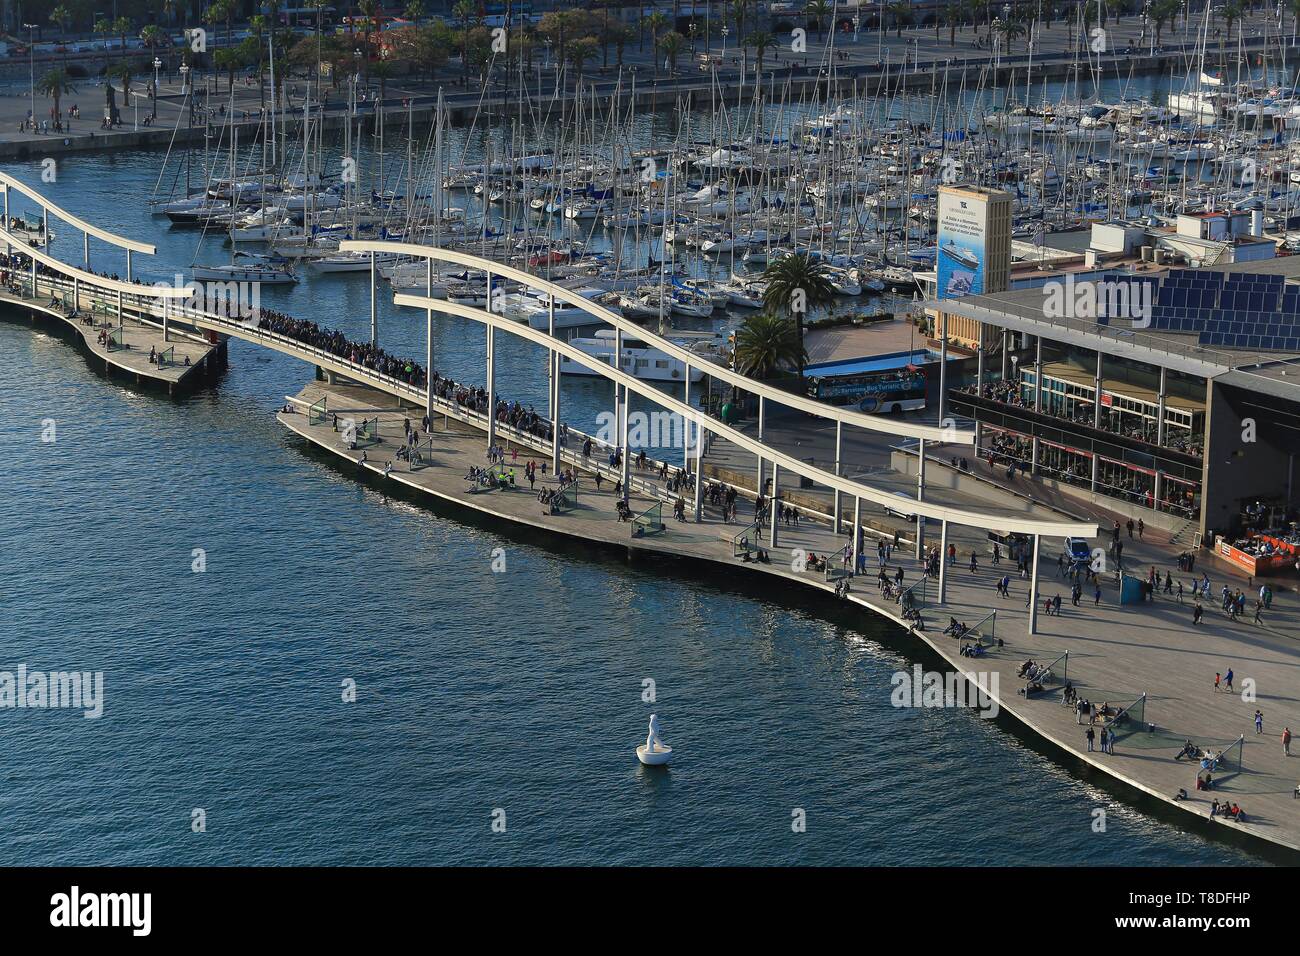 Espagne, Catalogne, Barcelone, &# x200b ;&# x200b;la Rambla del Mar passerelles, l'œuvre des architectes Helio Pi±¾n et Albert Viaplana à côté de Port Vell Banque D'Images